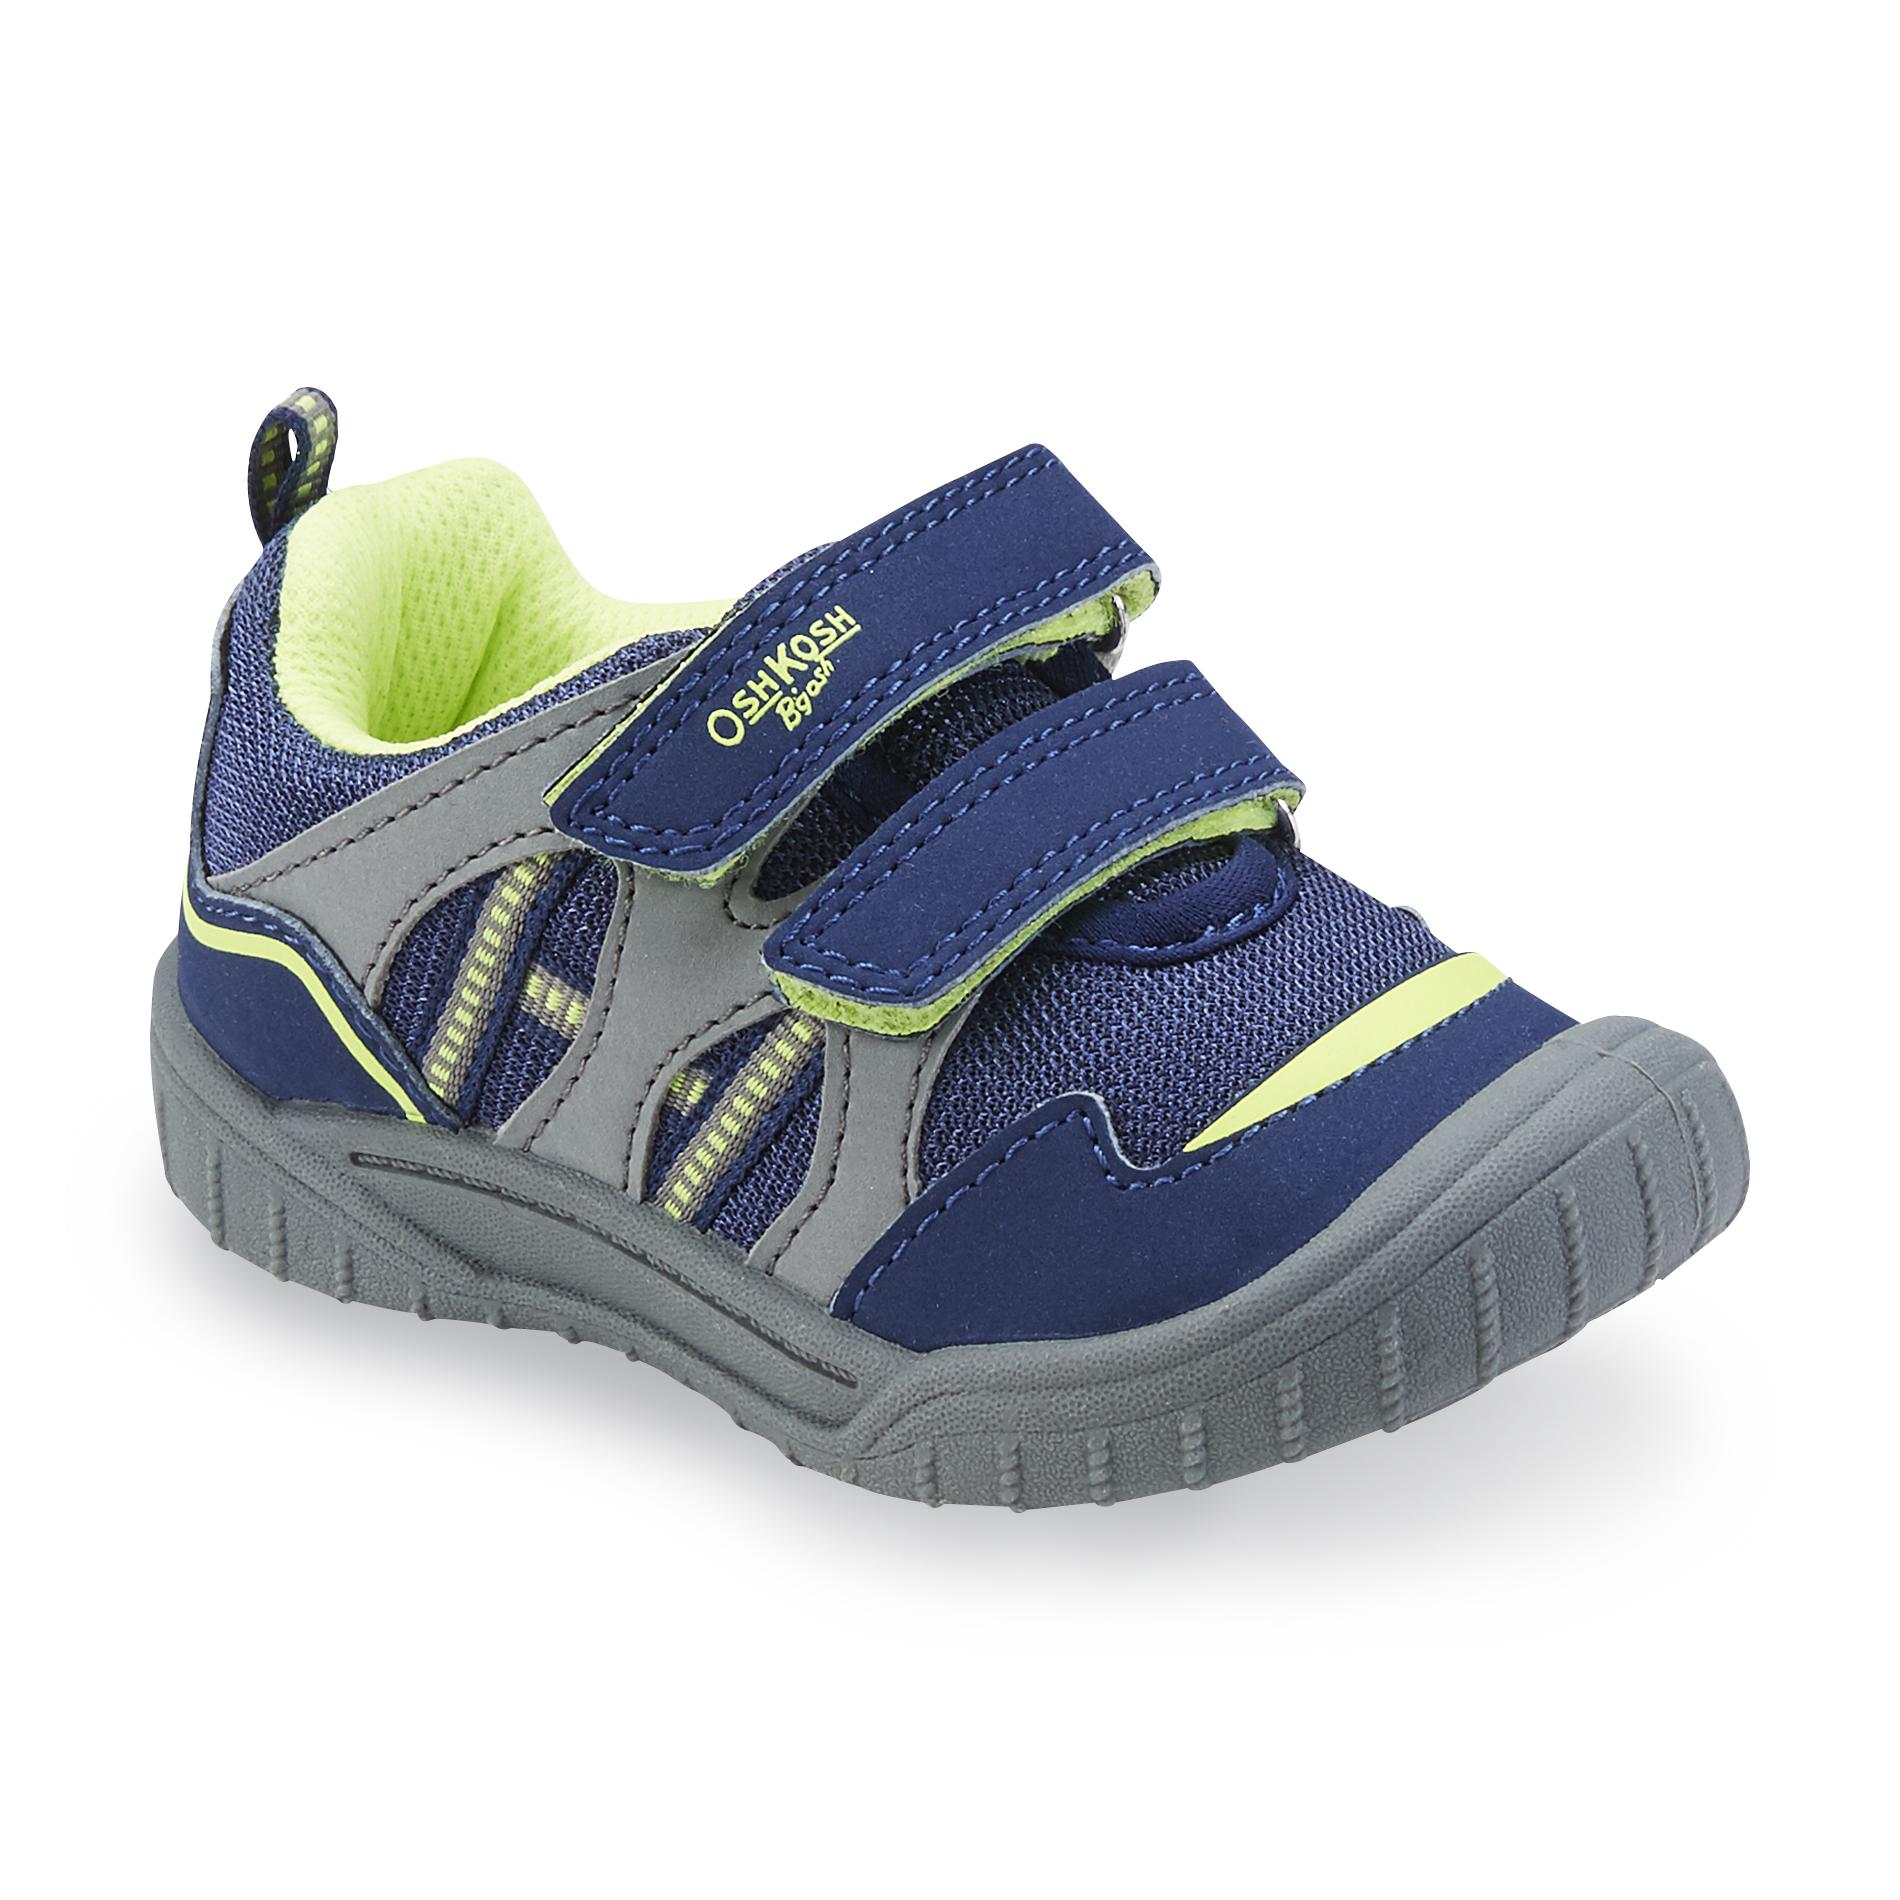 OshKosh Toddler Boy's Zula Blue/Gray Athletic Shoe - Shoes ...